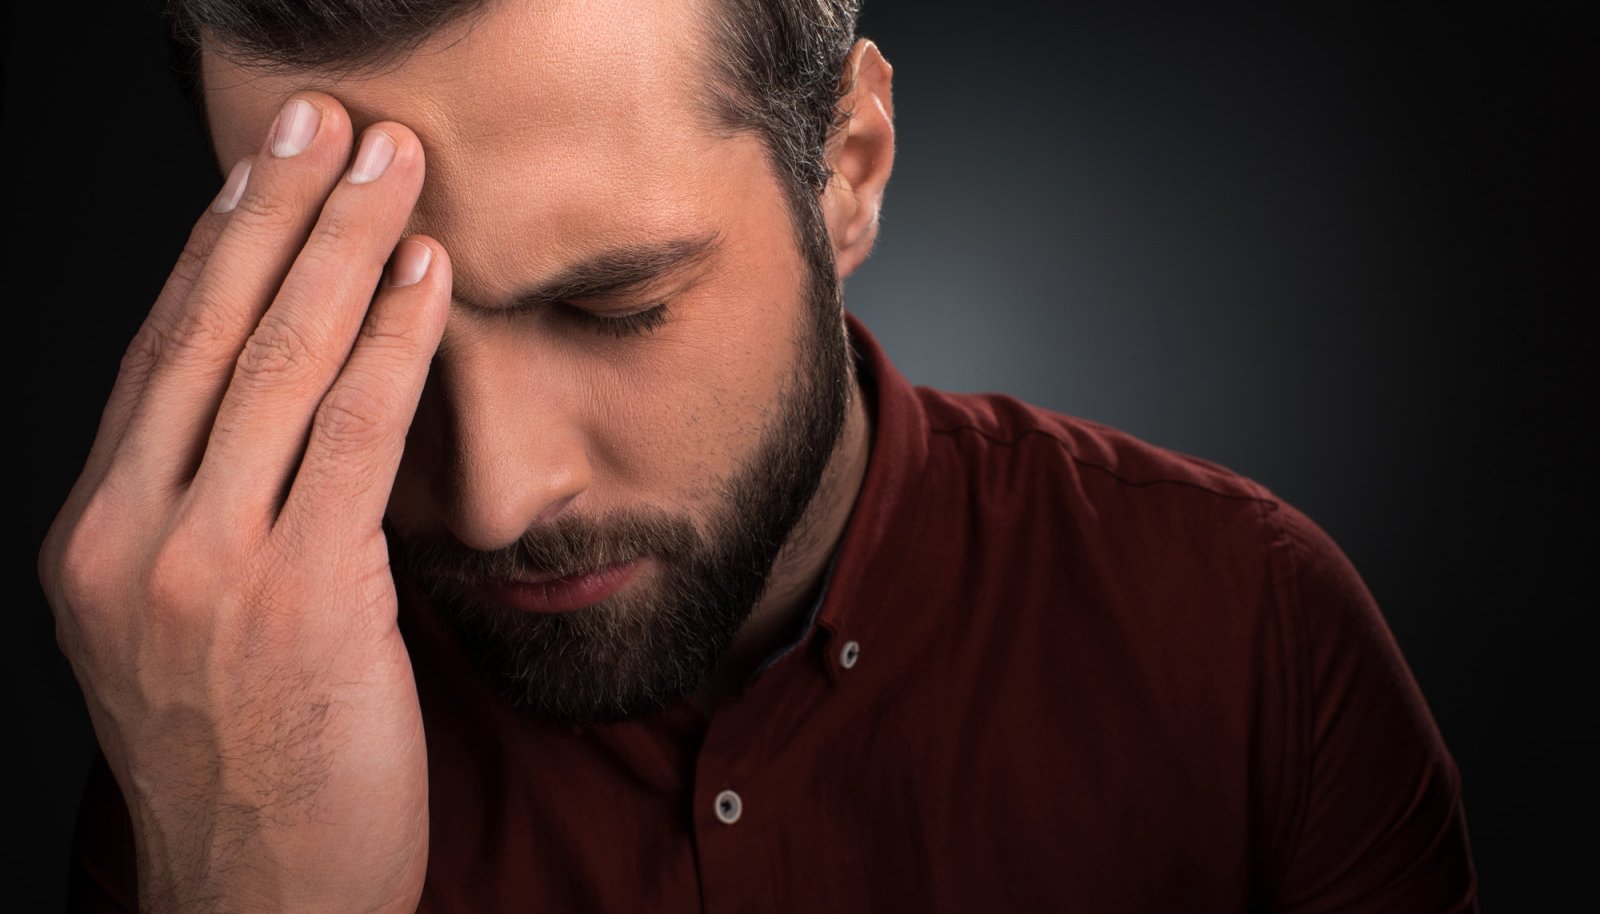 Uhise haiguse nutmine voi valu liigestes kondides trepist